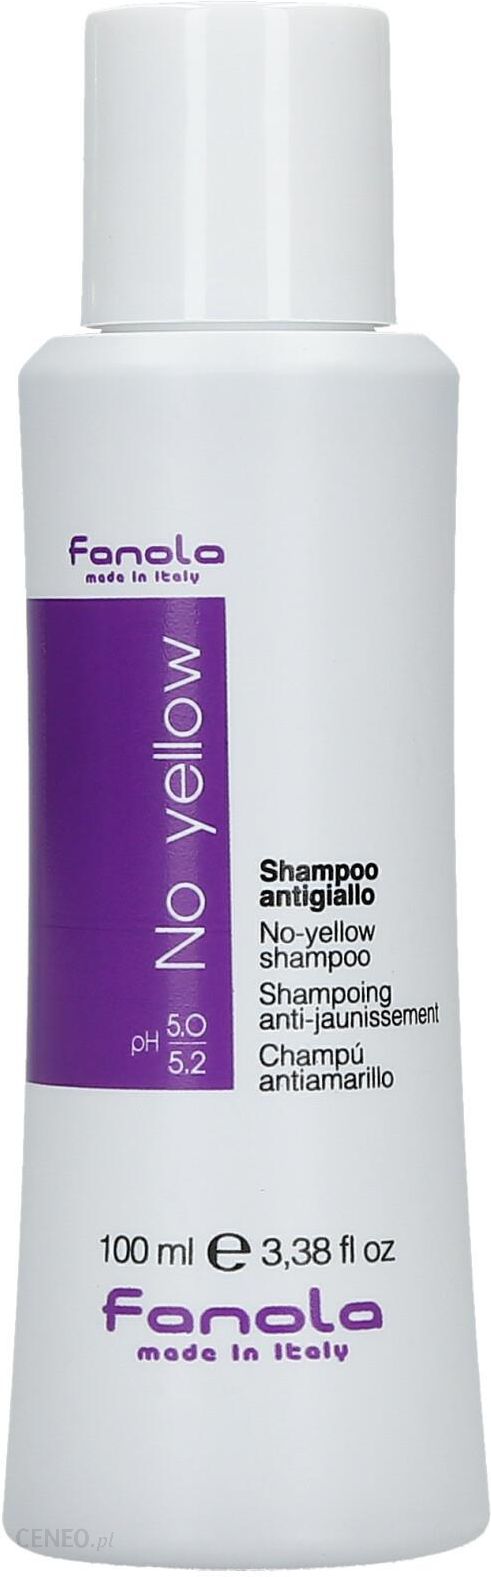 szampon no yellow fanola opinie kafeteria